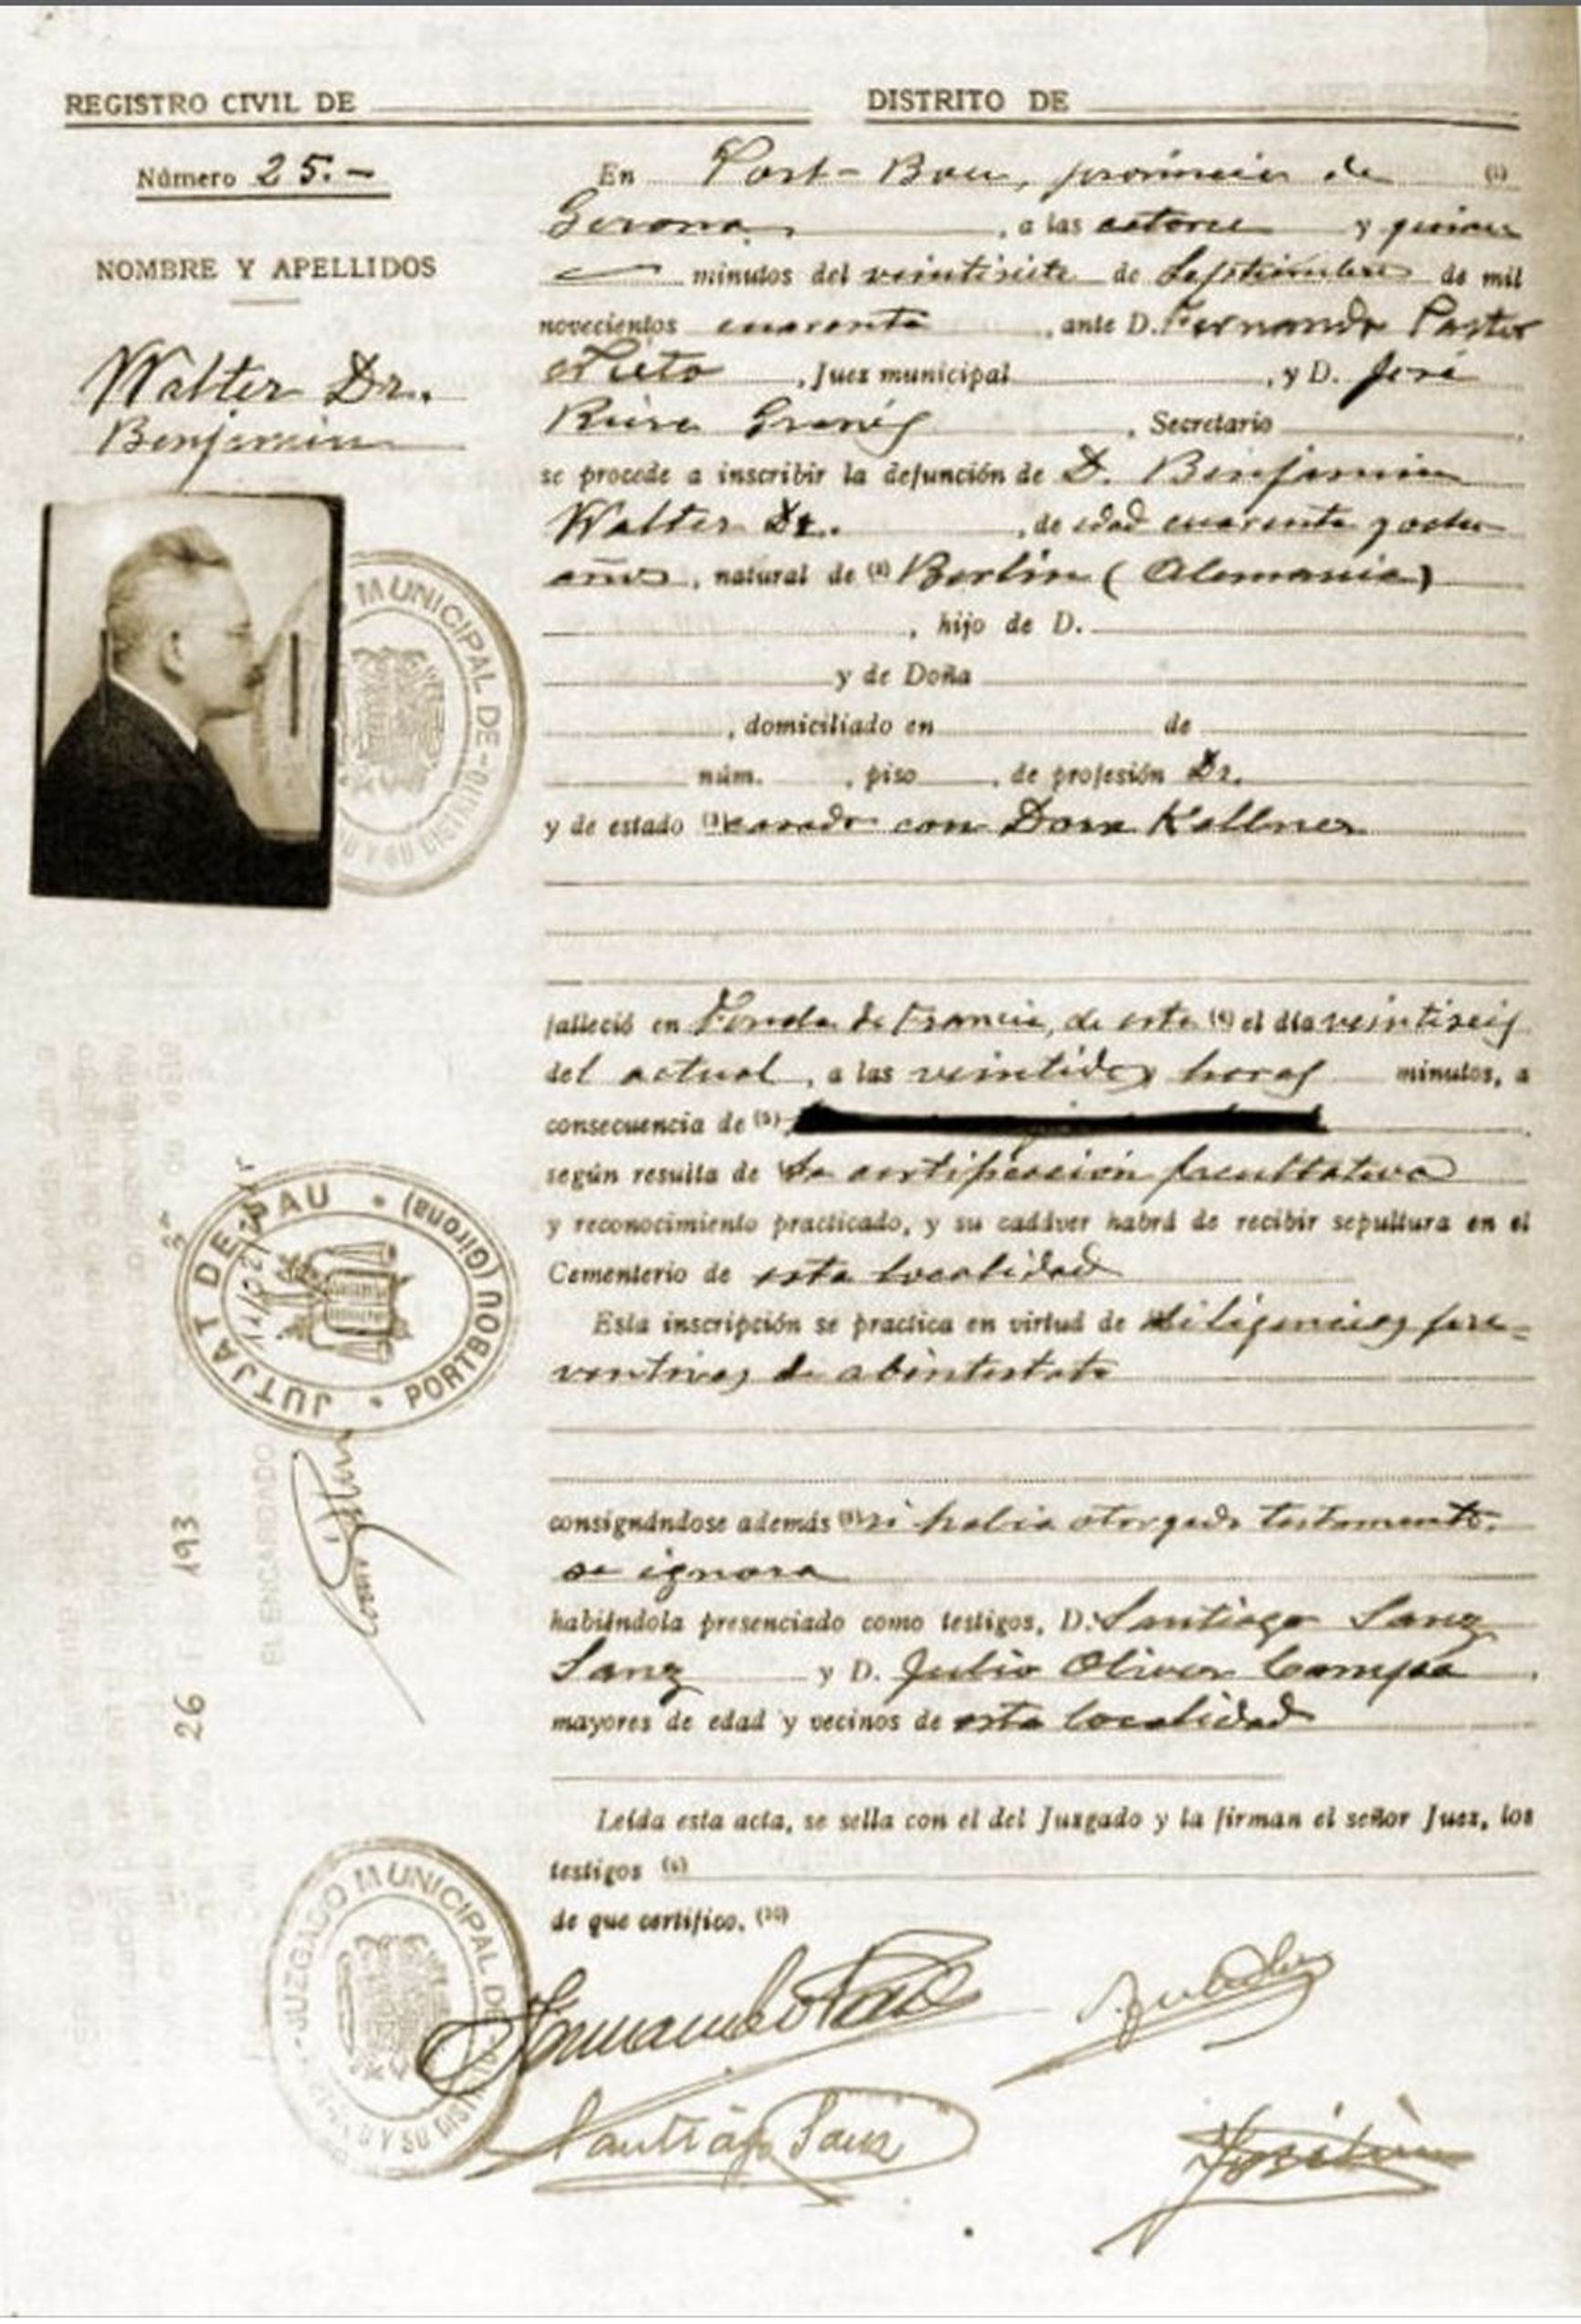 Walter Benjamin's death certificate  urokiistorii.ru